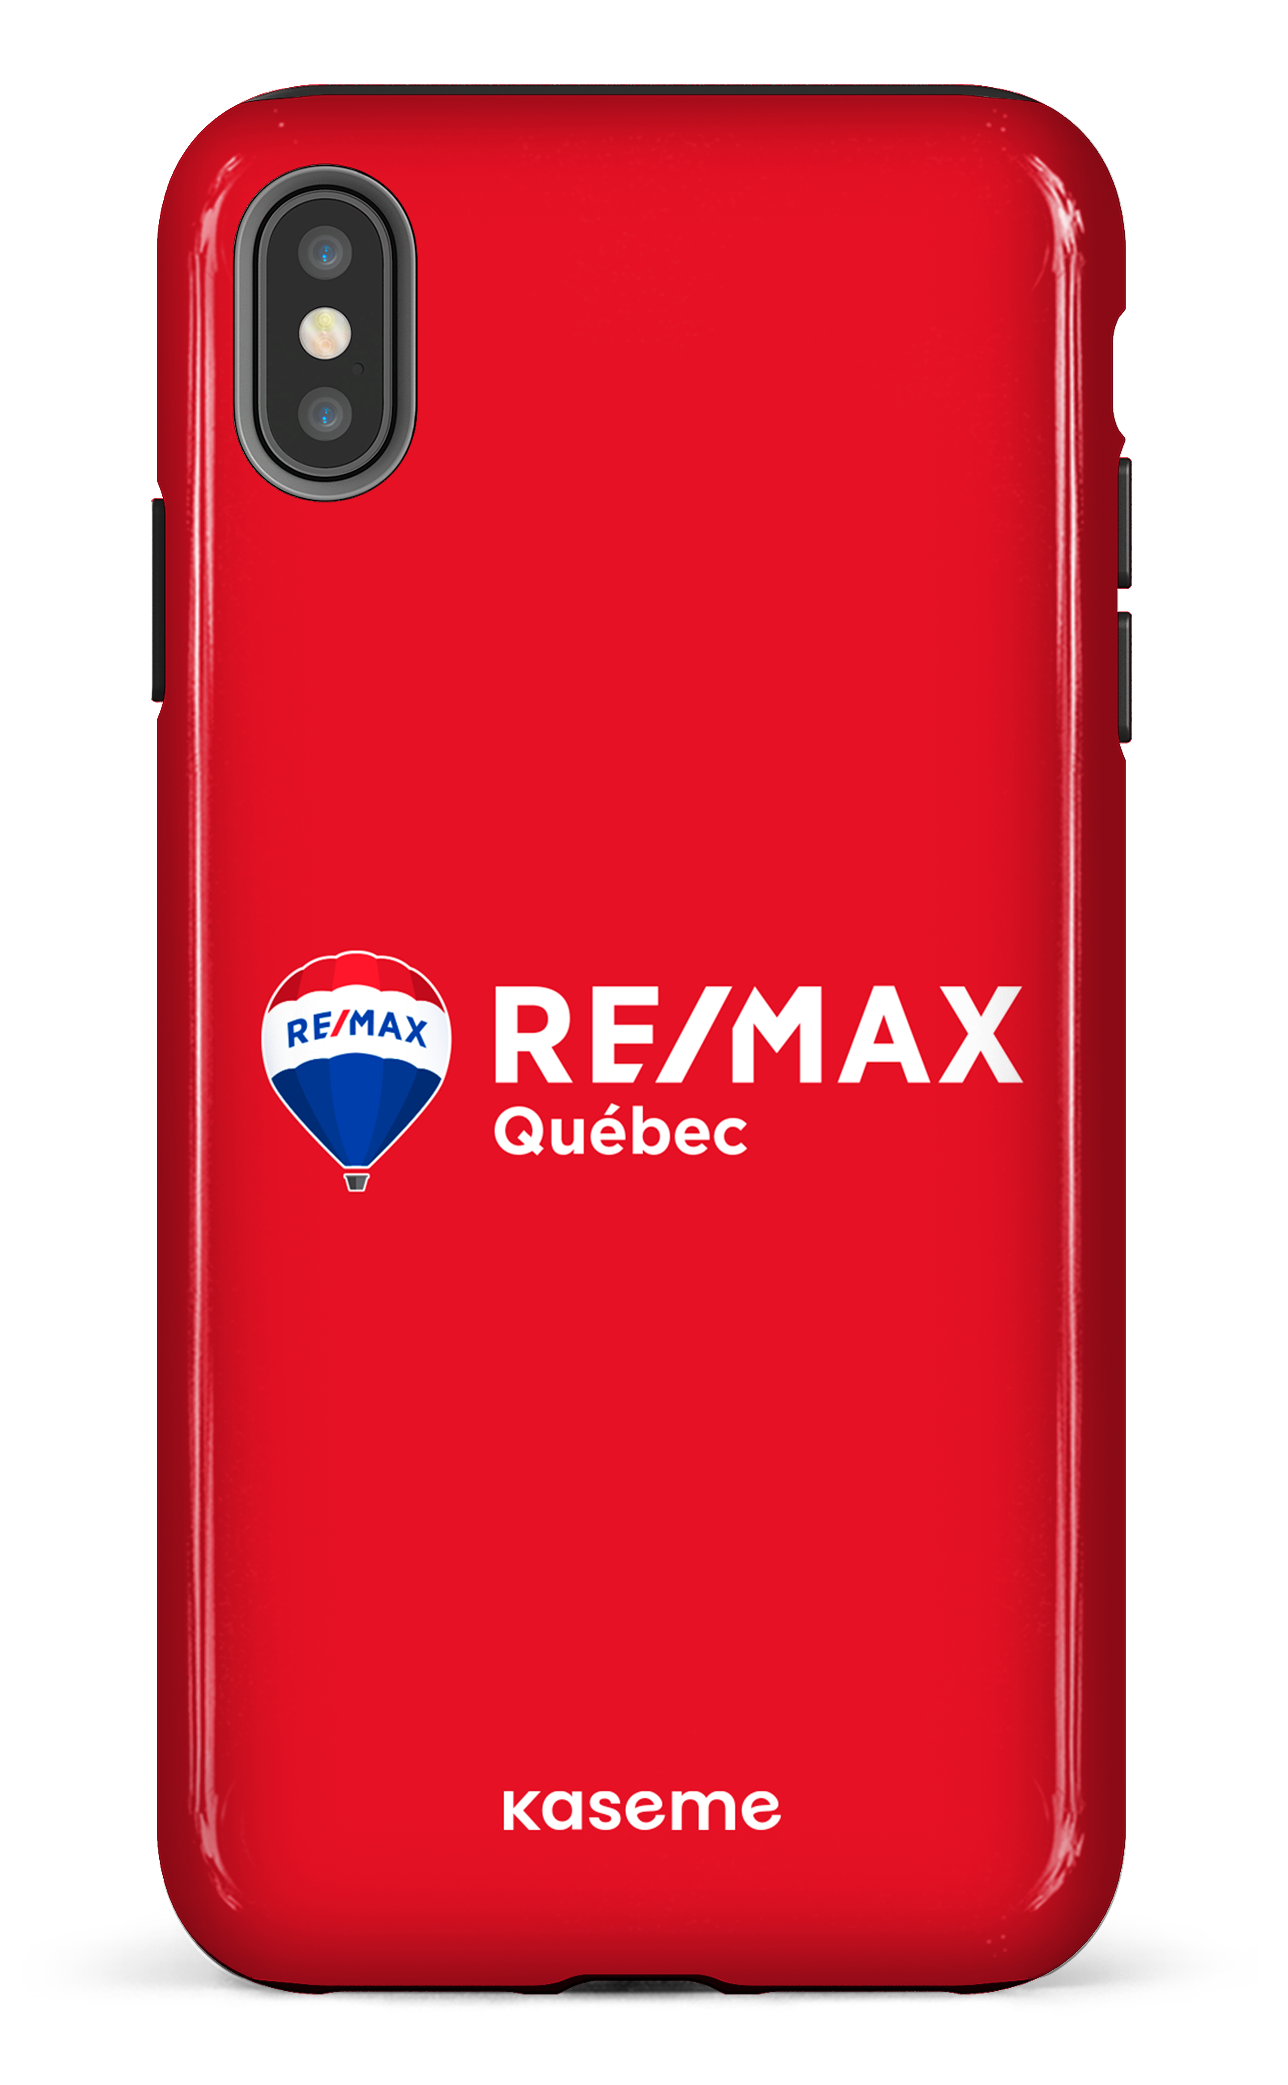 Remax Québec Rouge - iPhone XS Max